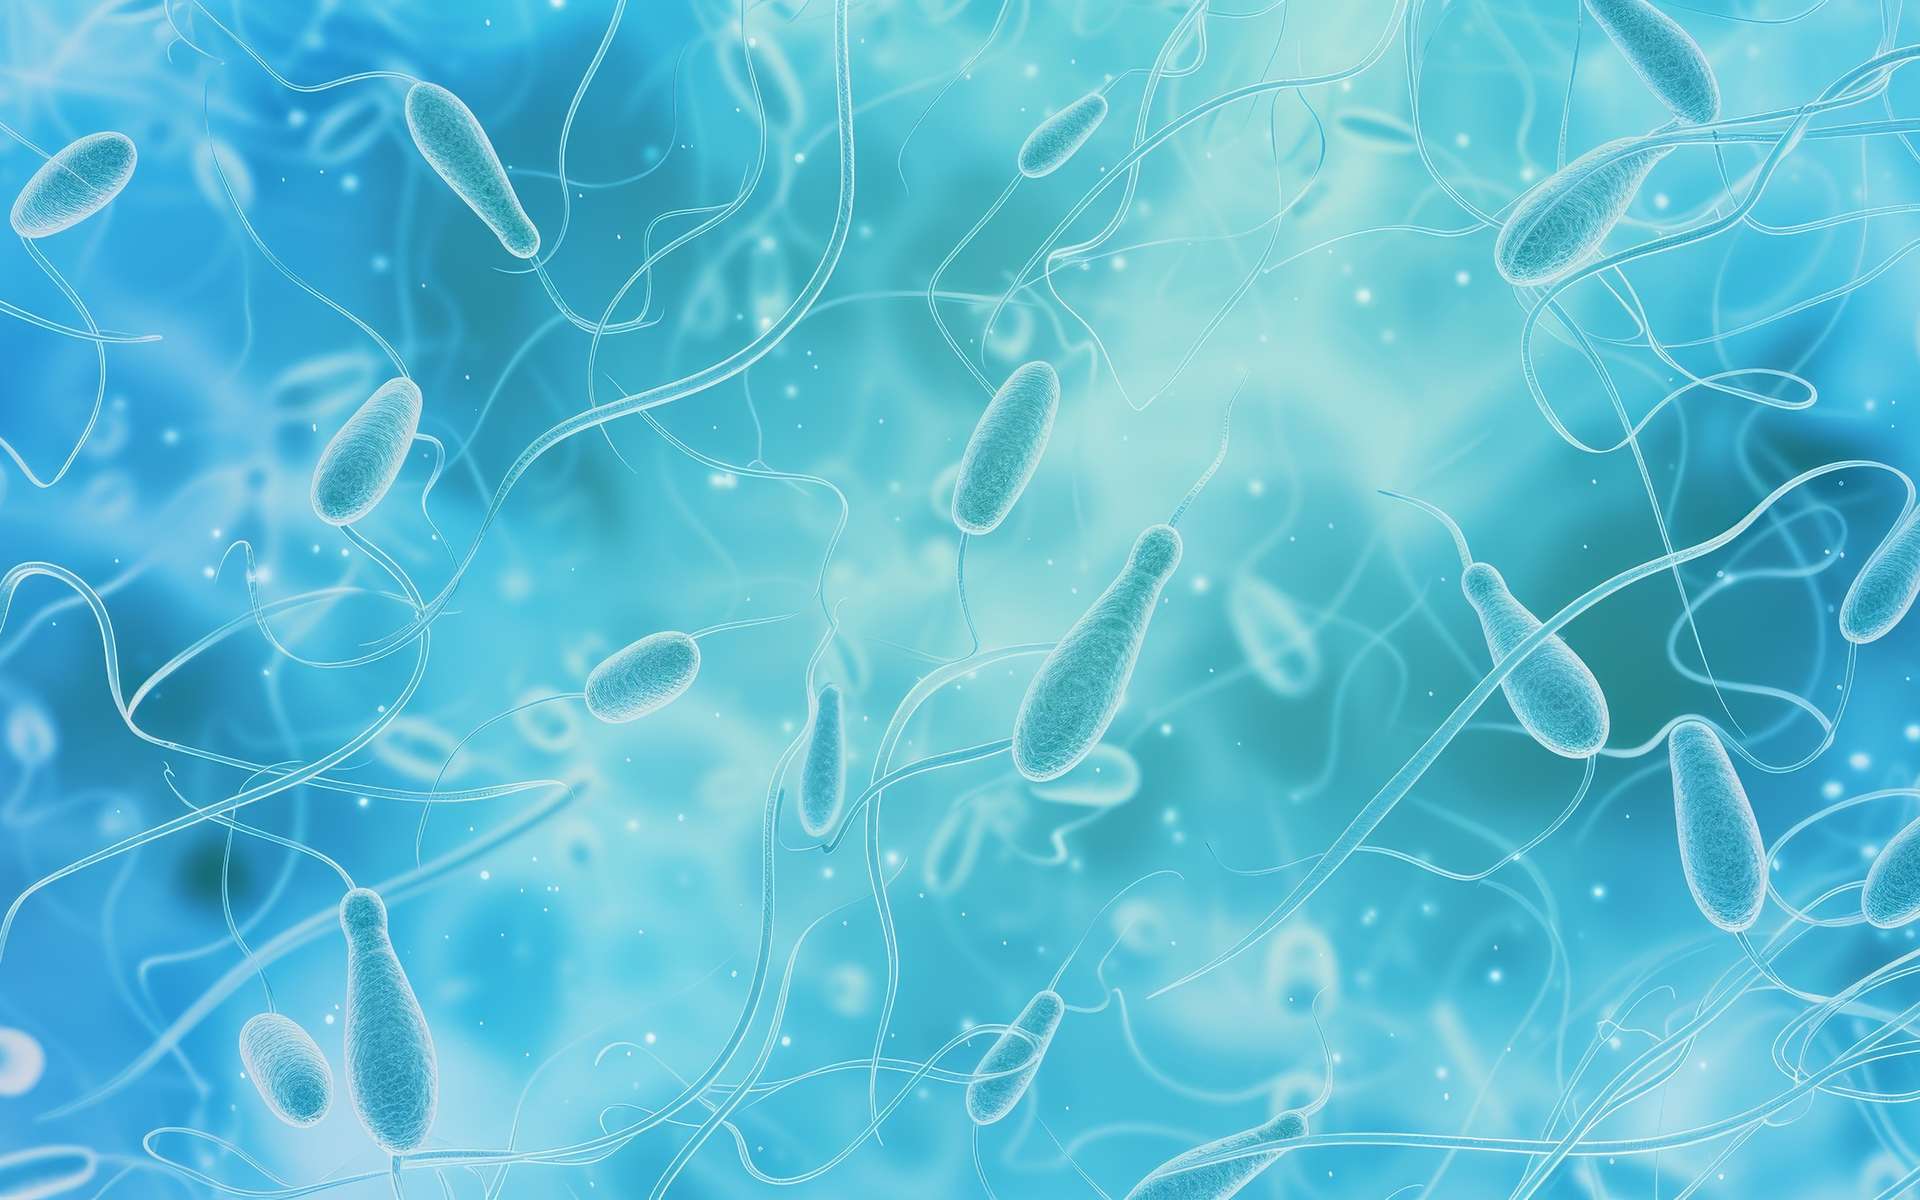 Des microplastiques aux effets divers découverts dans le sperme humain